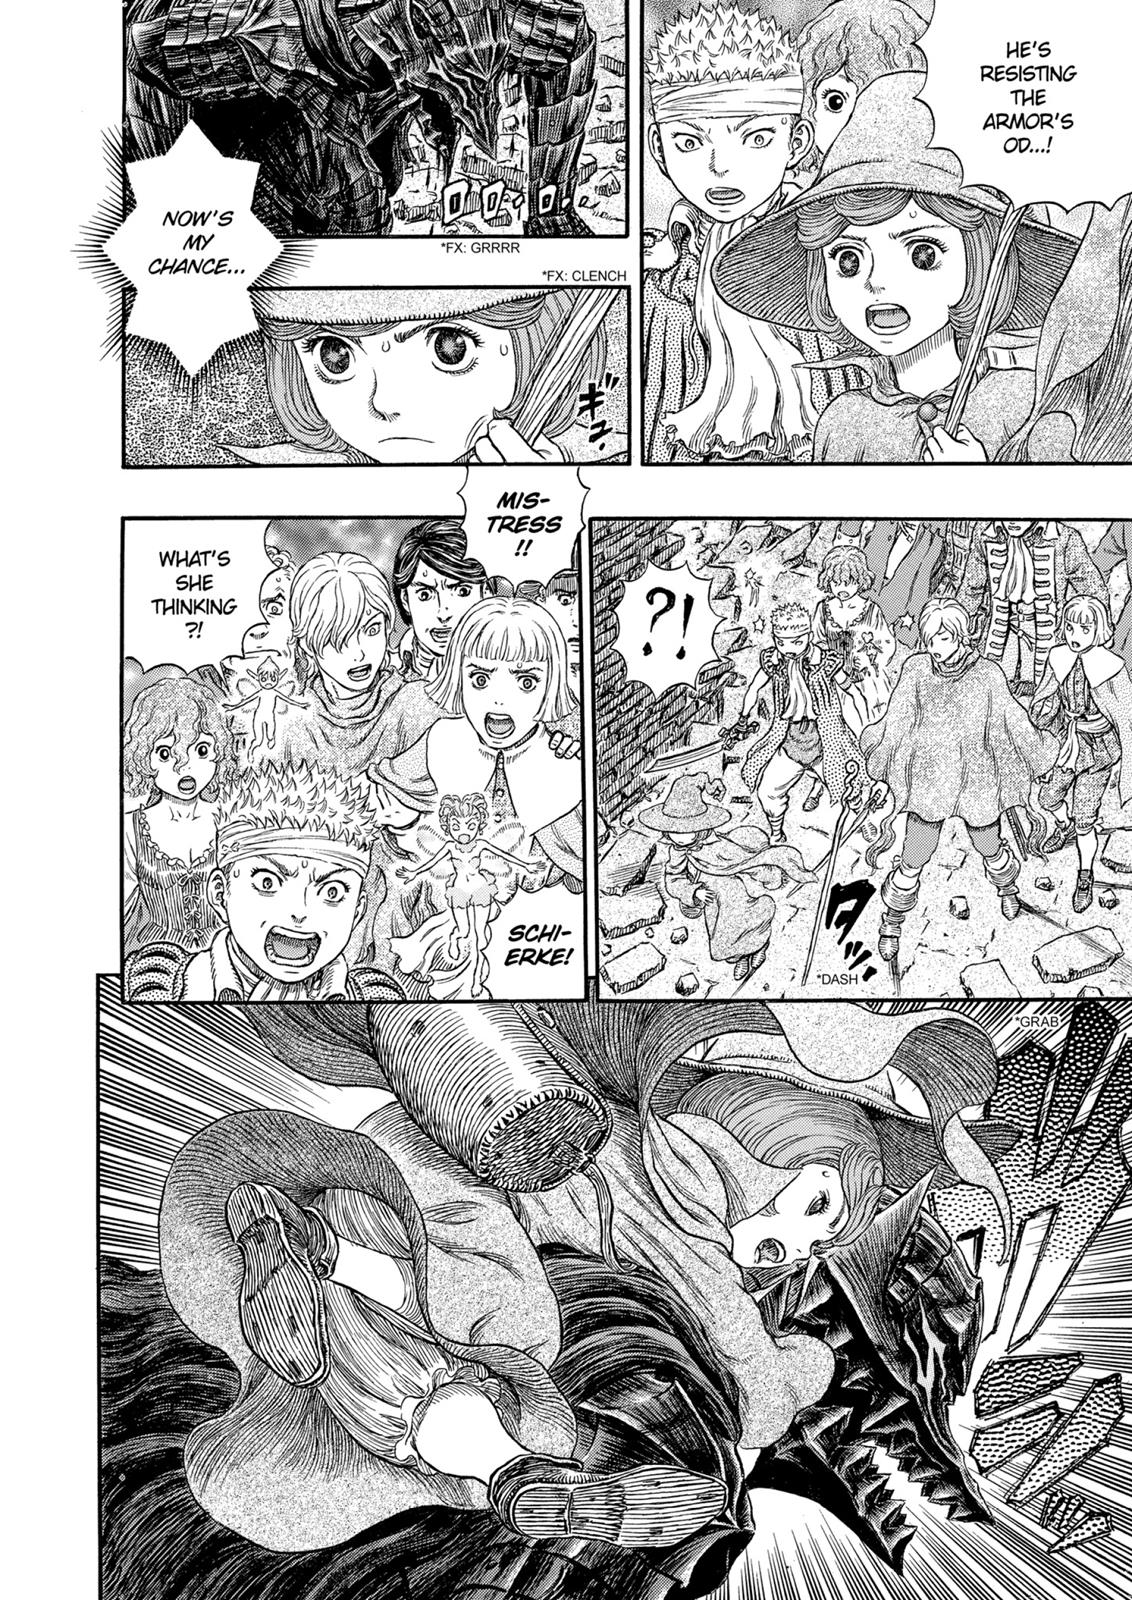 Berserk Manga Chapter 317 image 05